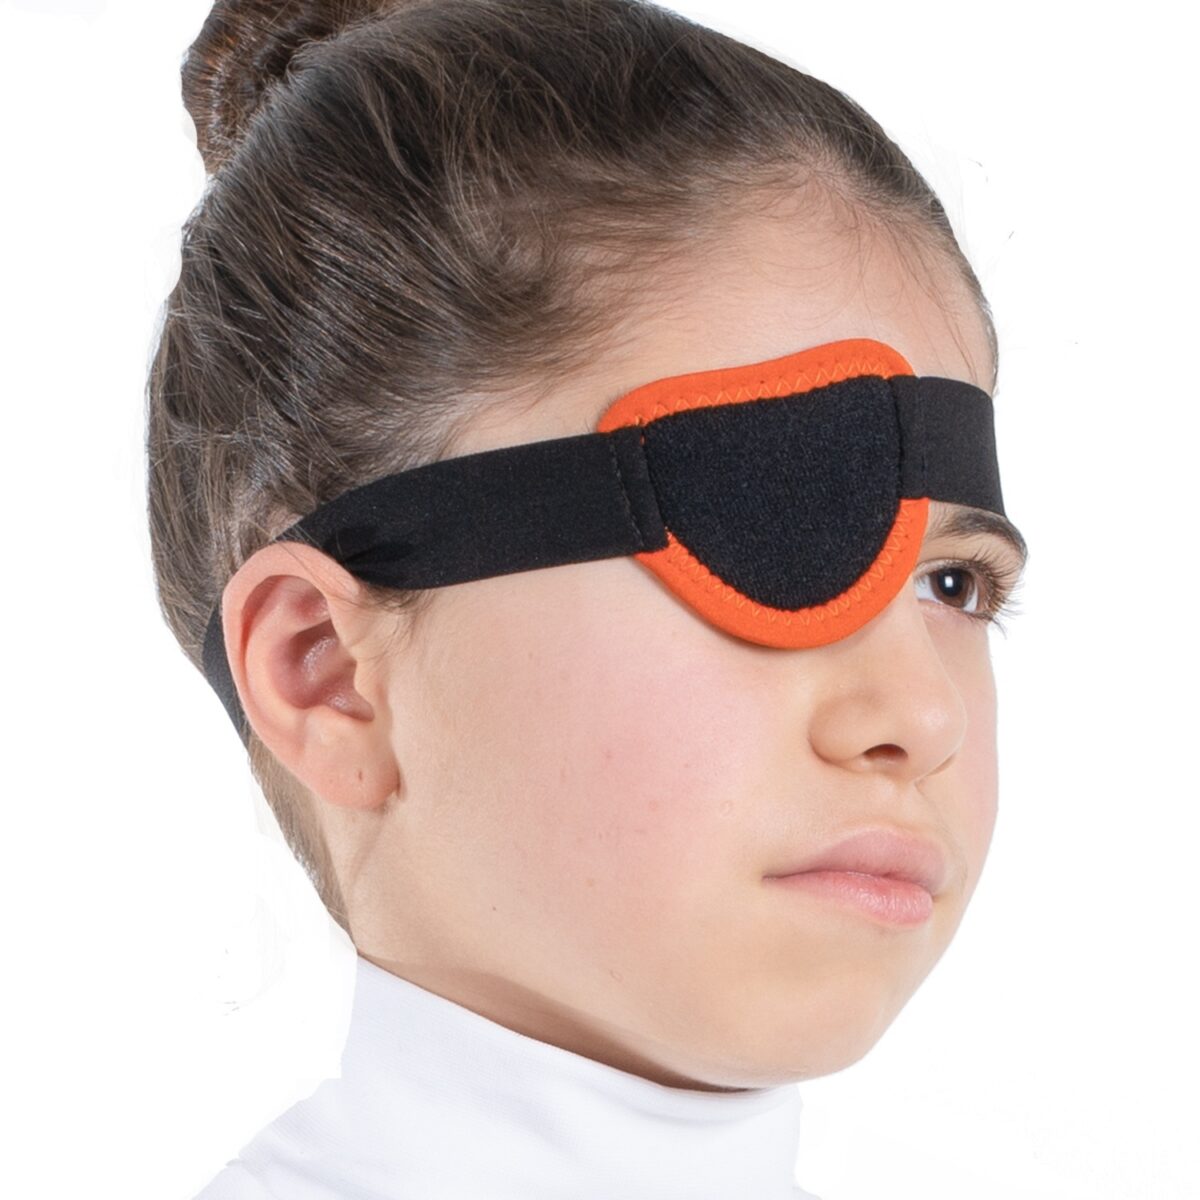 wingmed orthopedic equipments W930 pirate eye bandage 07